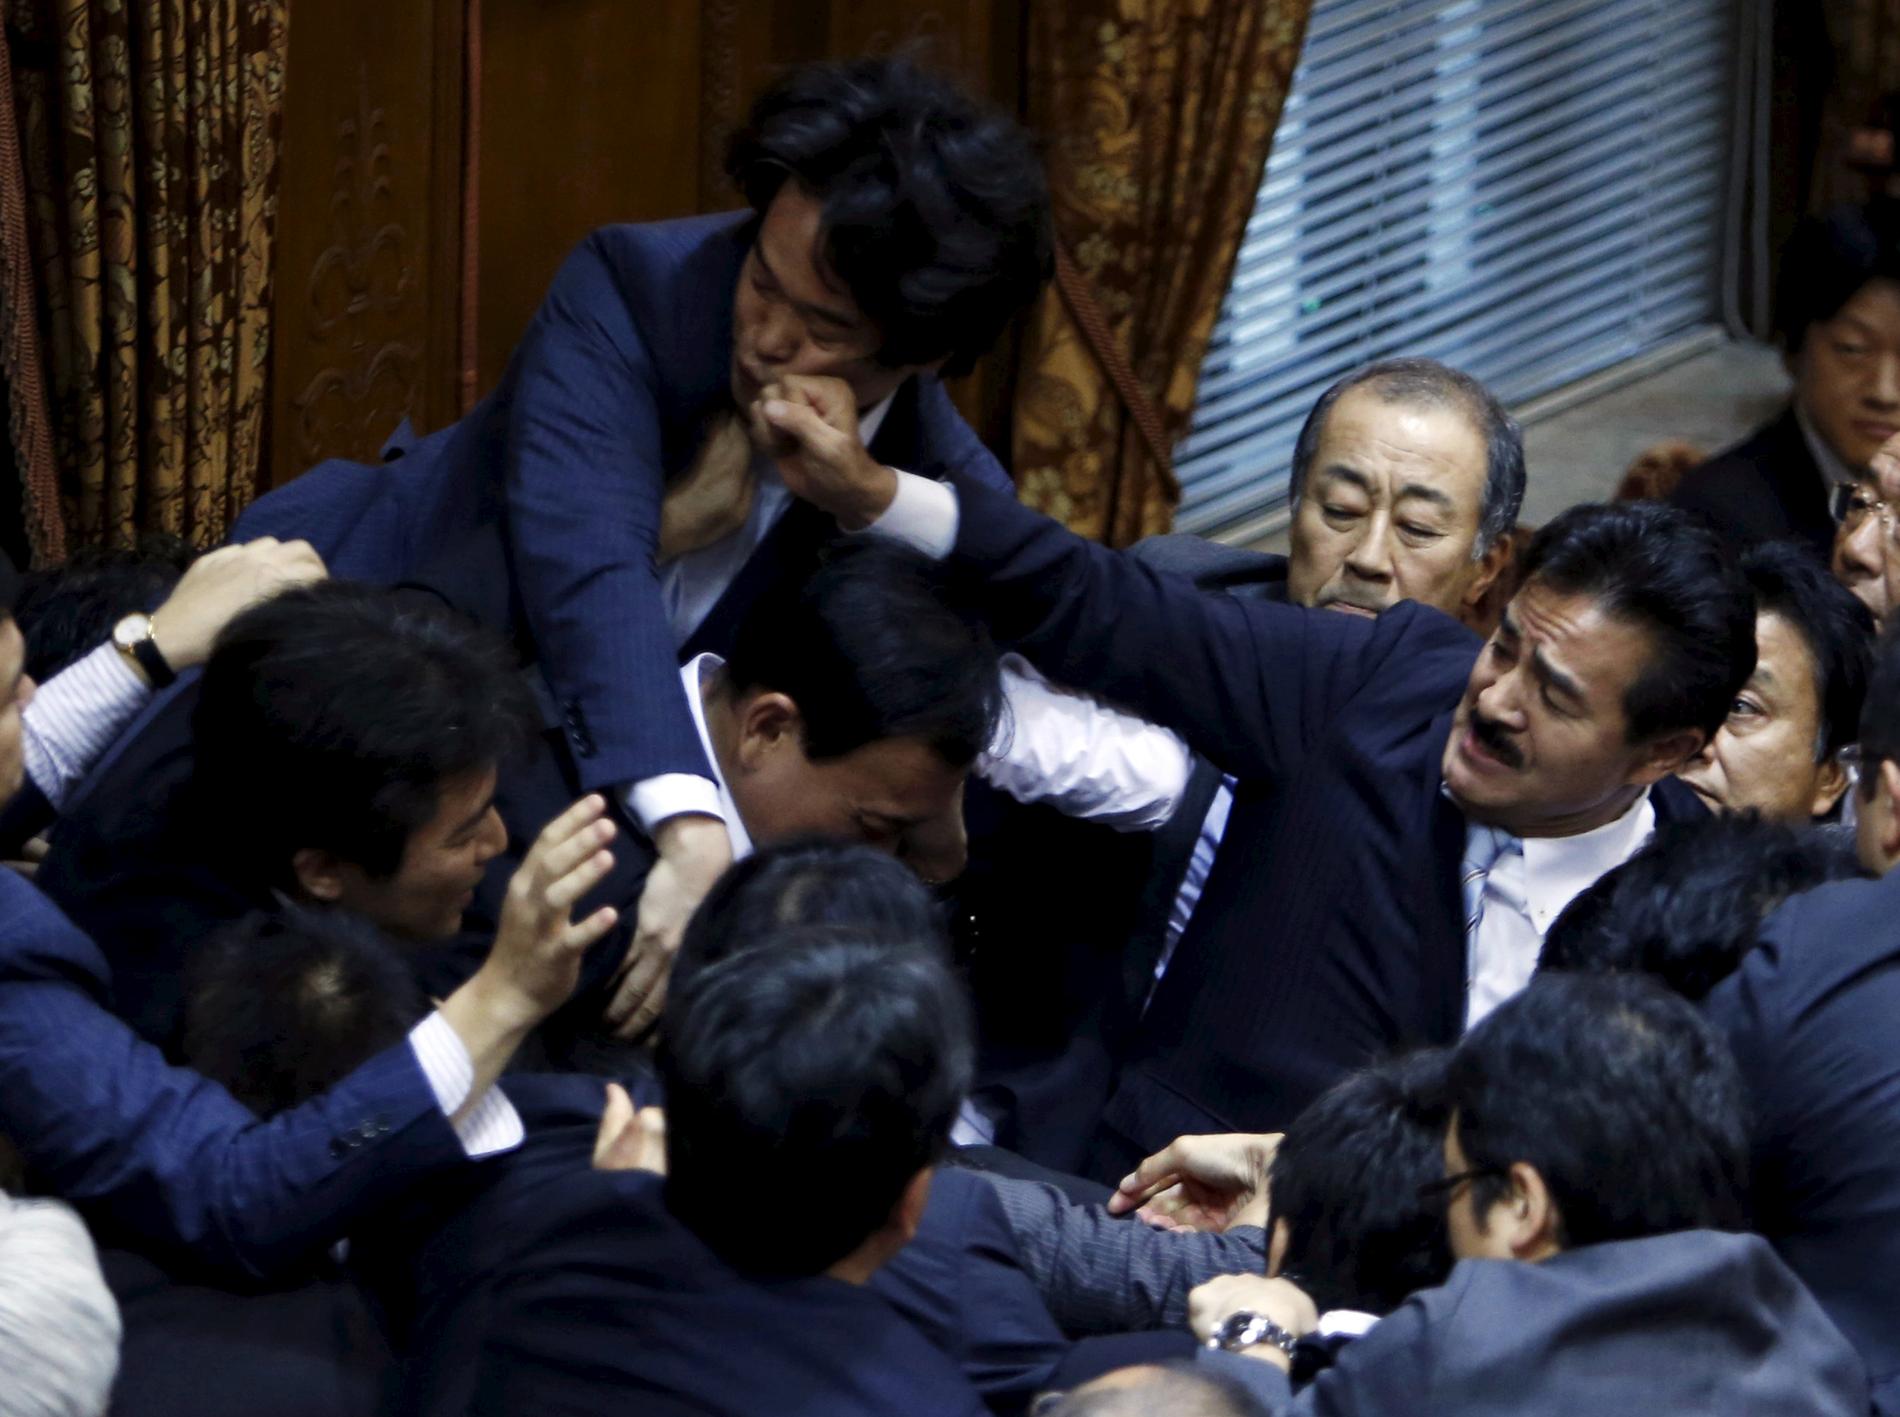 Slagsmål utbröt i det japanska parlamentets överhus under en debatt om att avskaffa landets pacifism.